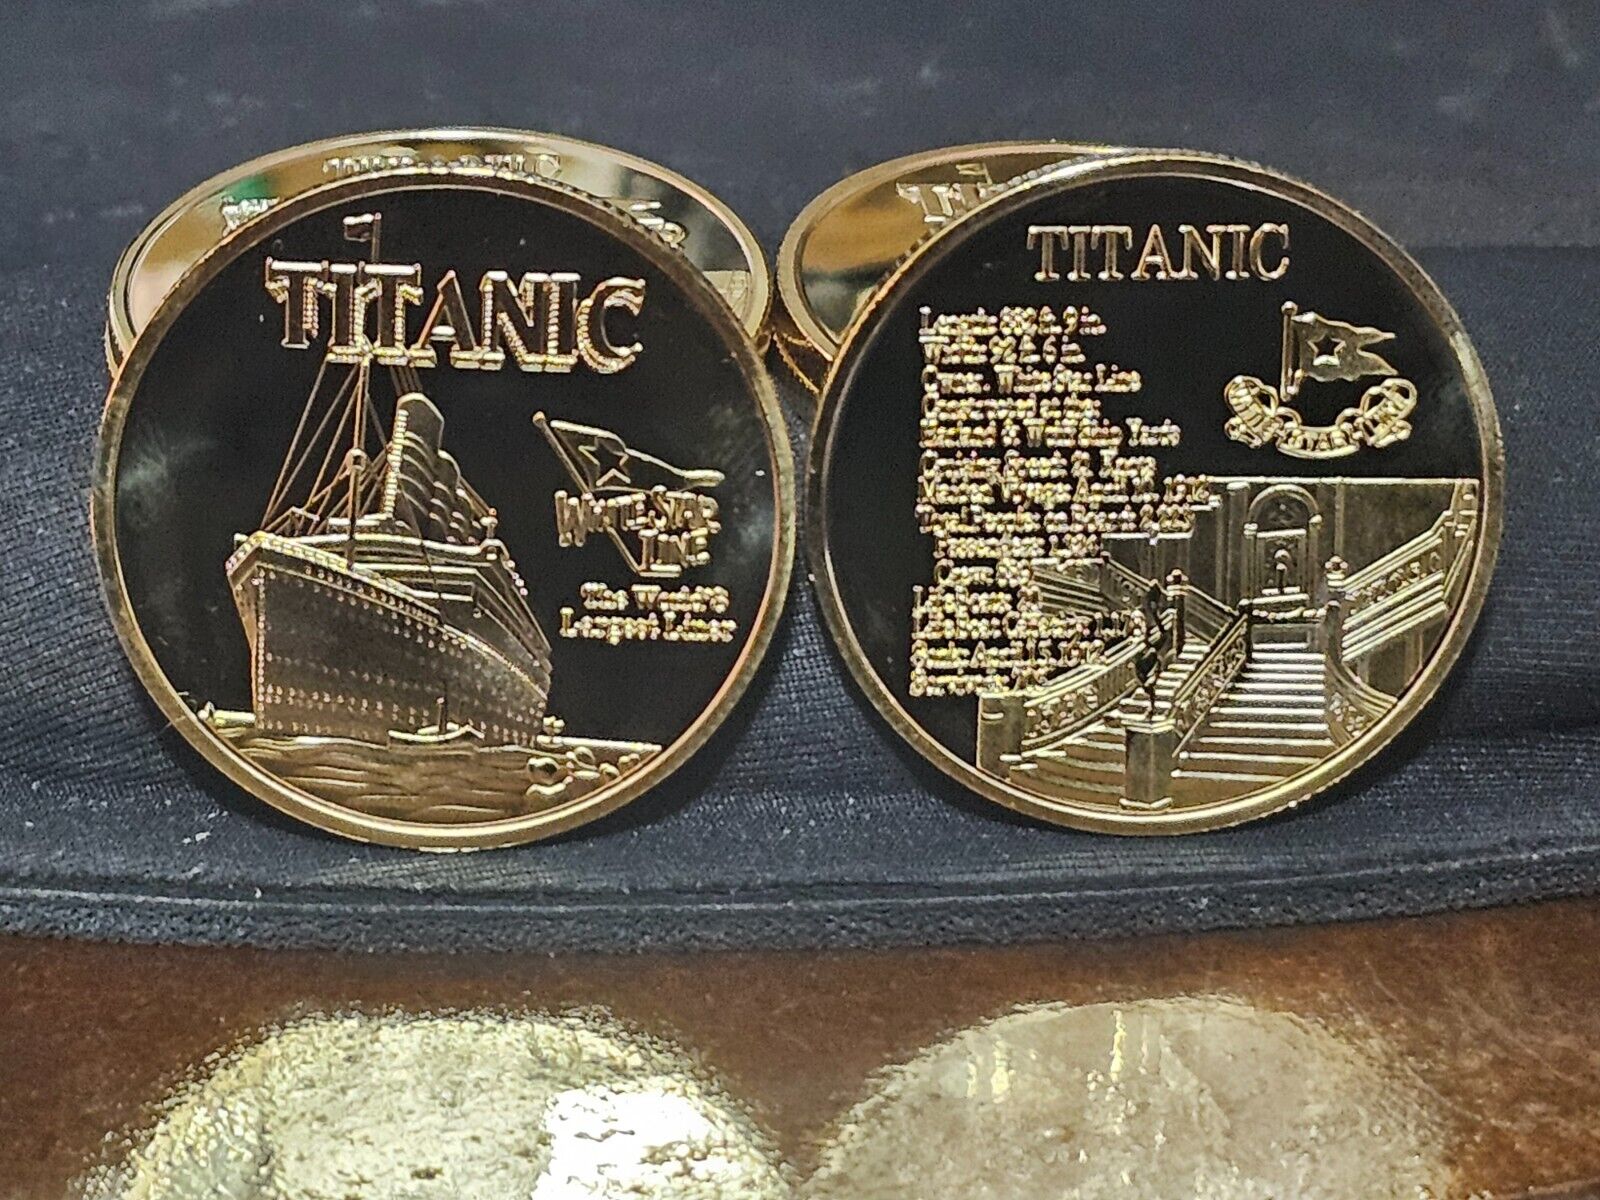 2024 Titanic White Star Line commemorative collector coin